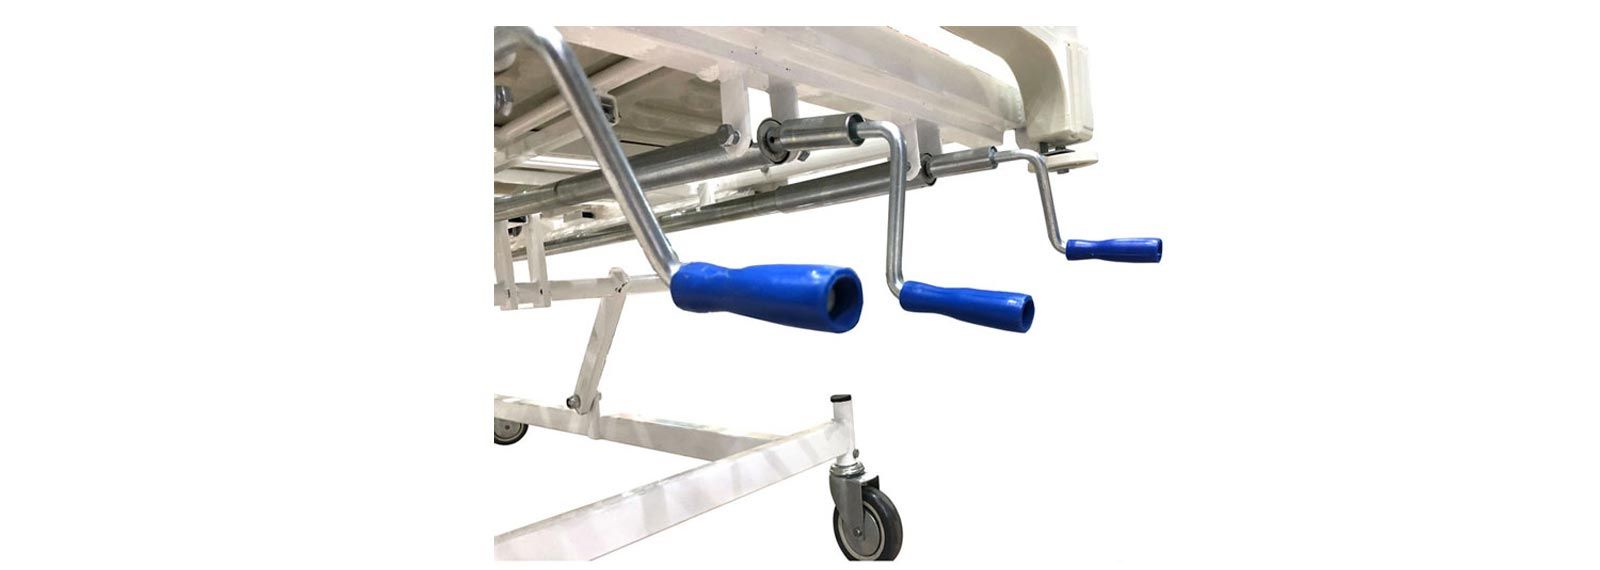 تخت بیمارستانی سه شکن مکانیکی با تنظیم ارتفاع